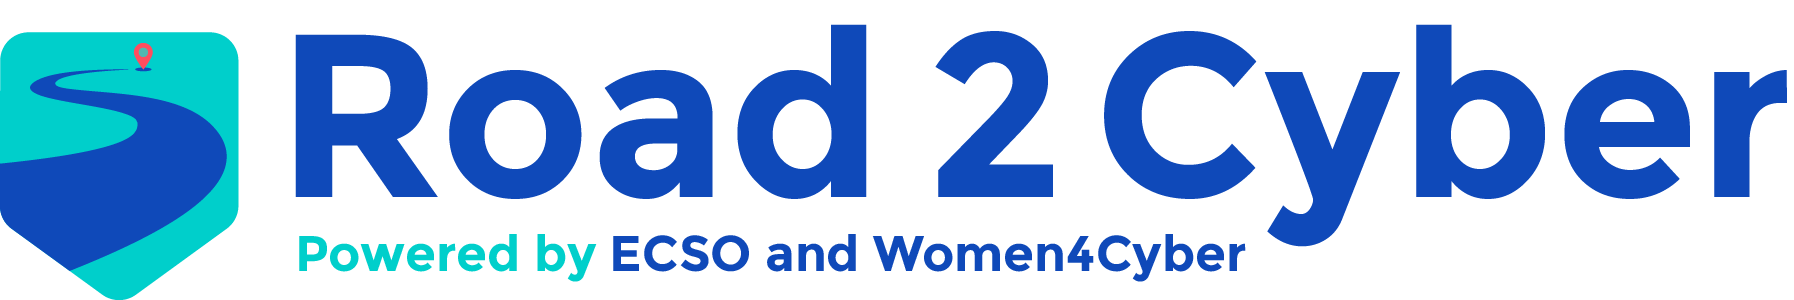 Road2Cyber logo